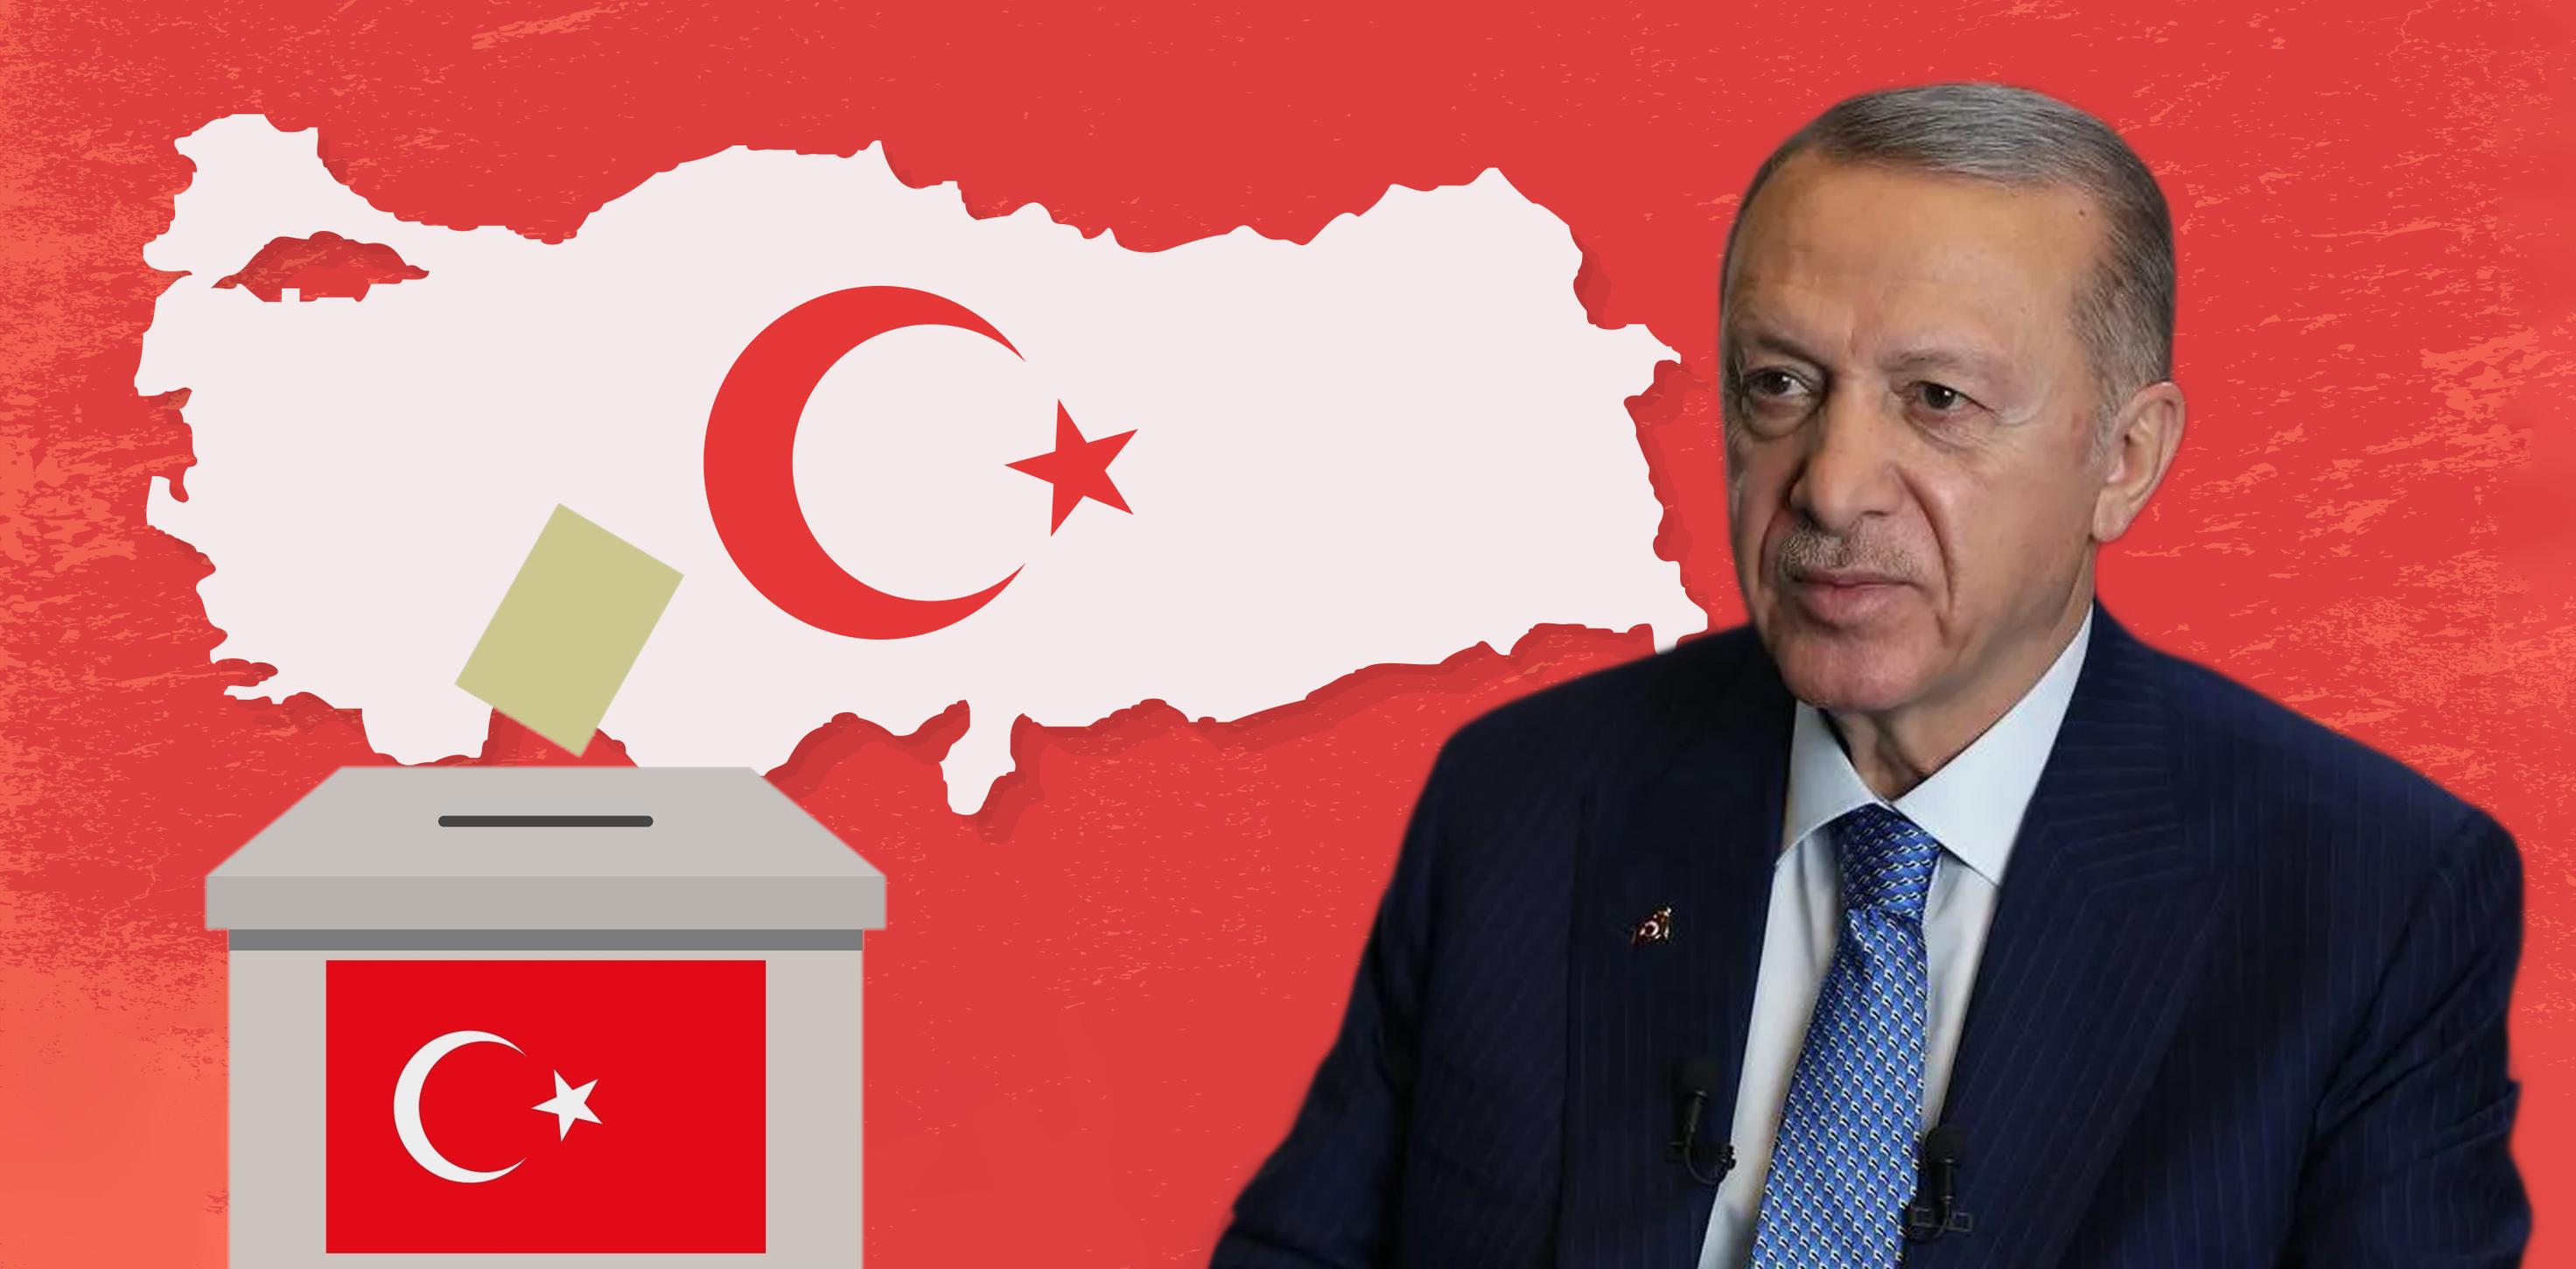 أبعاد إعلان الرئيس التركي إجراء انتخابات مبكرة